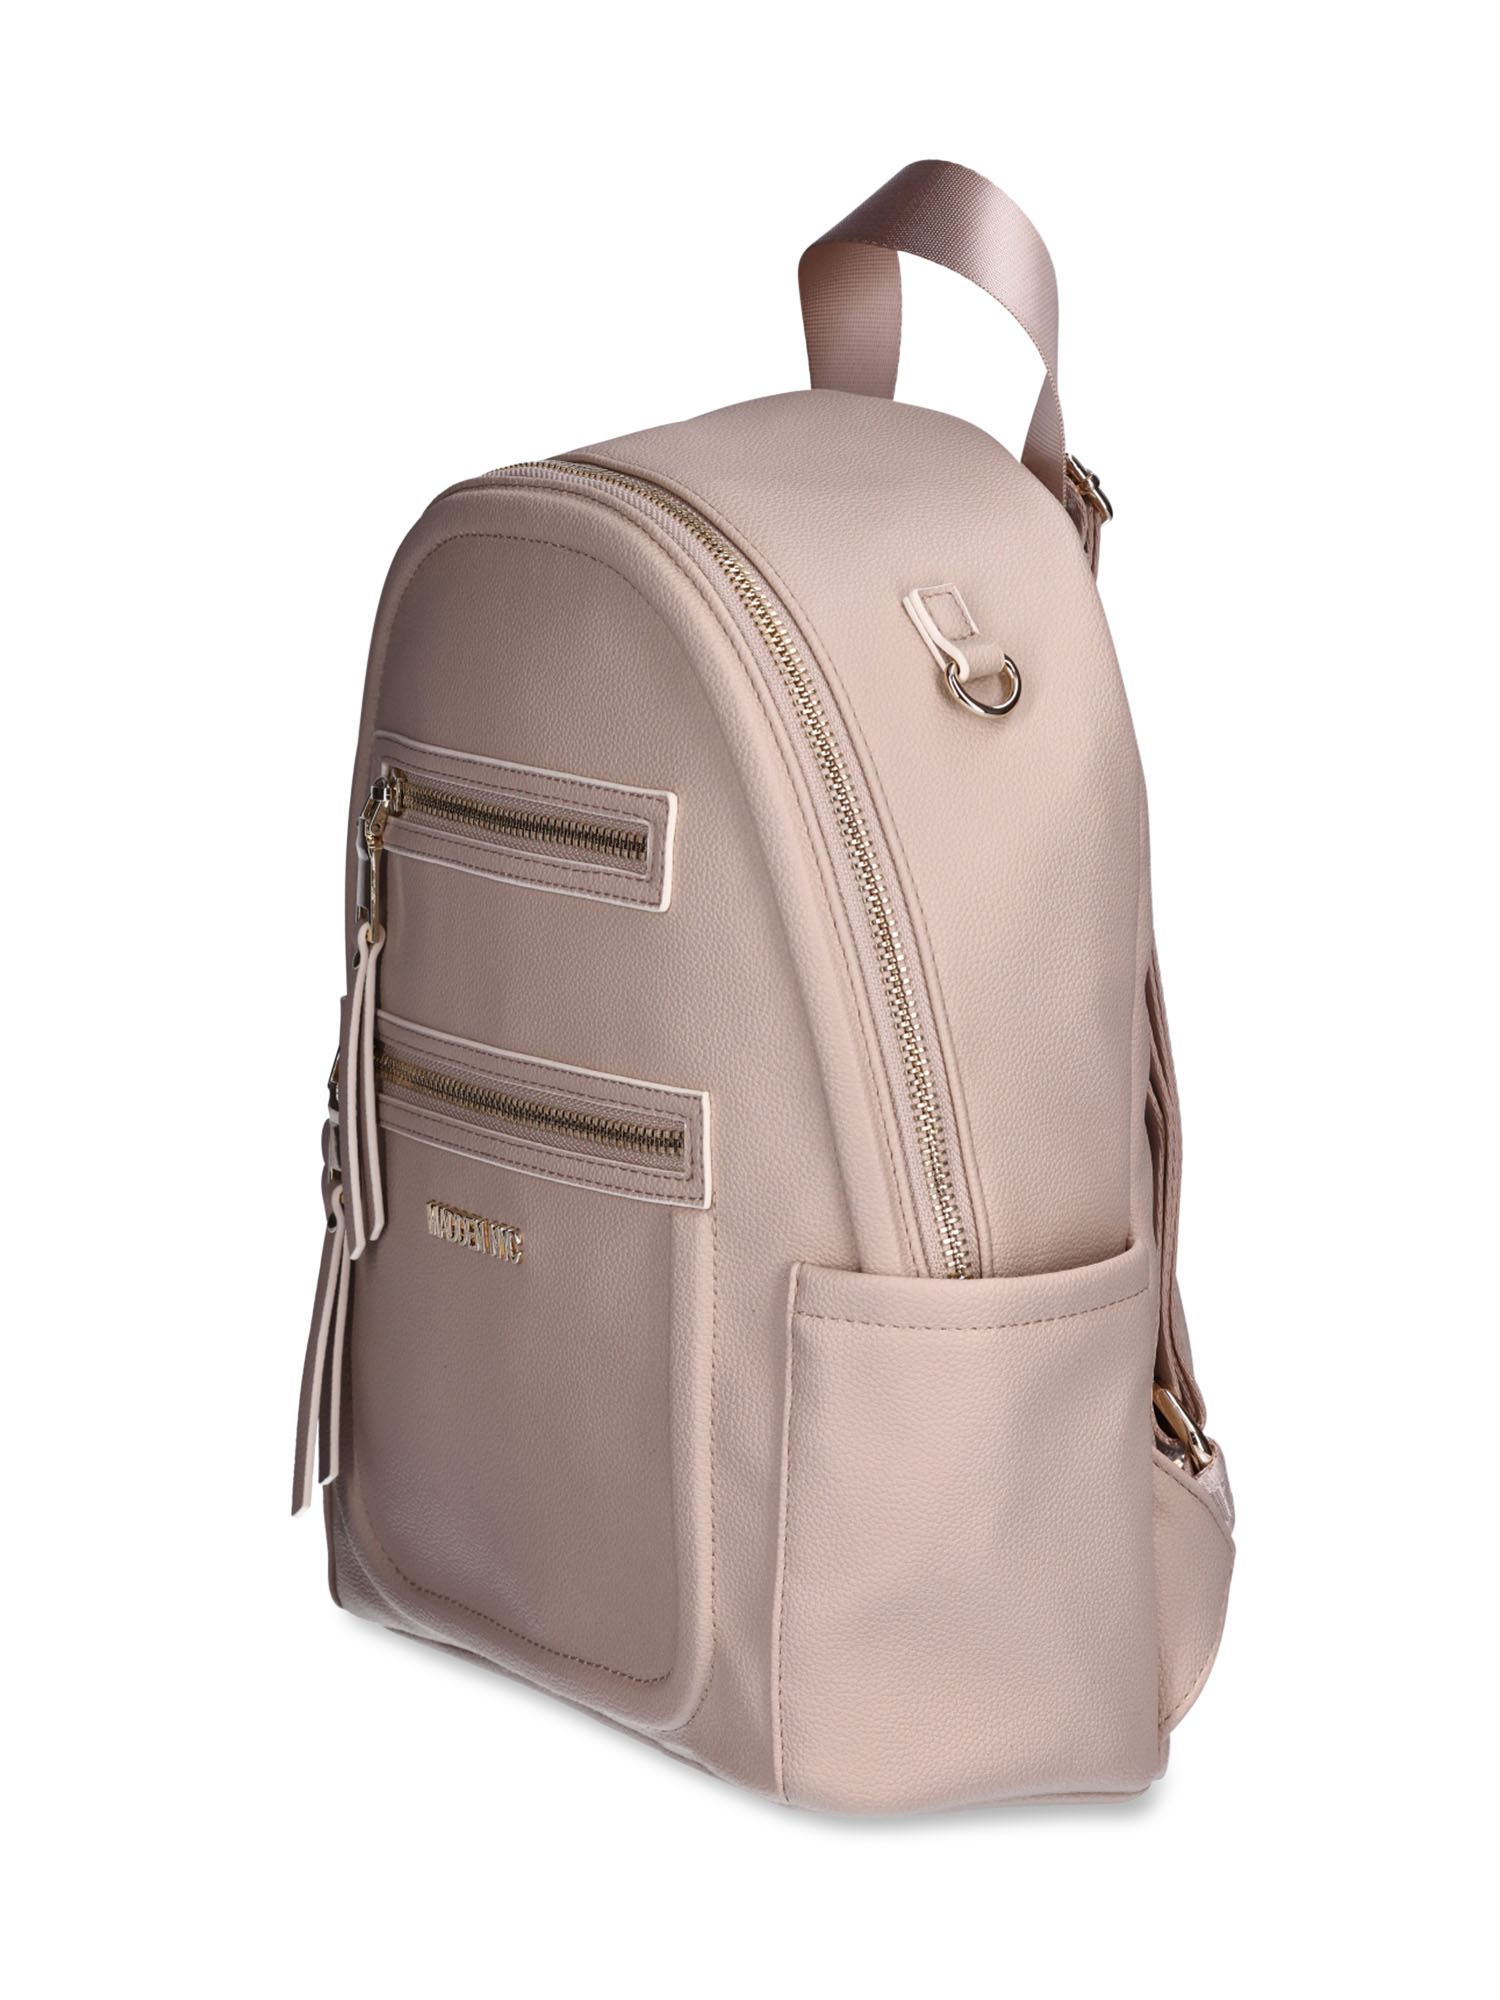 Buy Faux Leather Back Pack Work Bag School Bag Travel Bag Unisex Bag Smart  Back Pack Online in India - Etsy